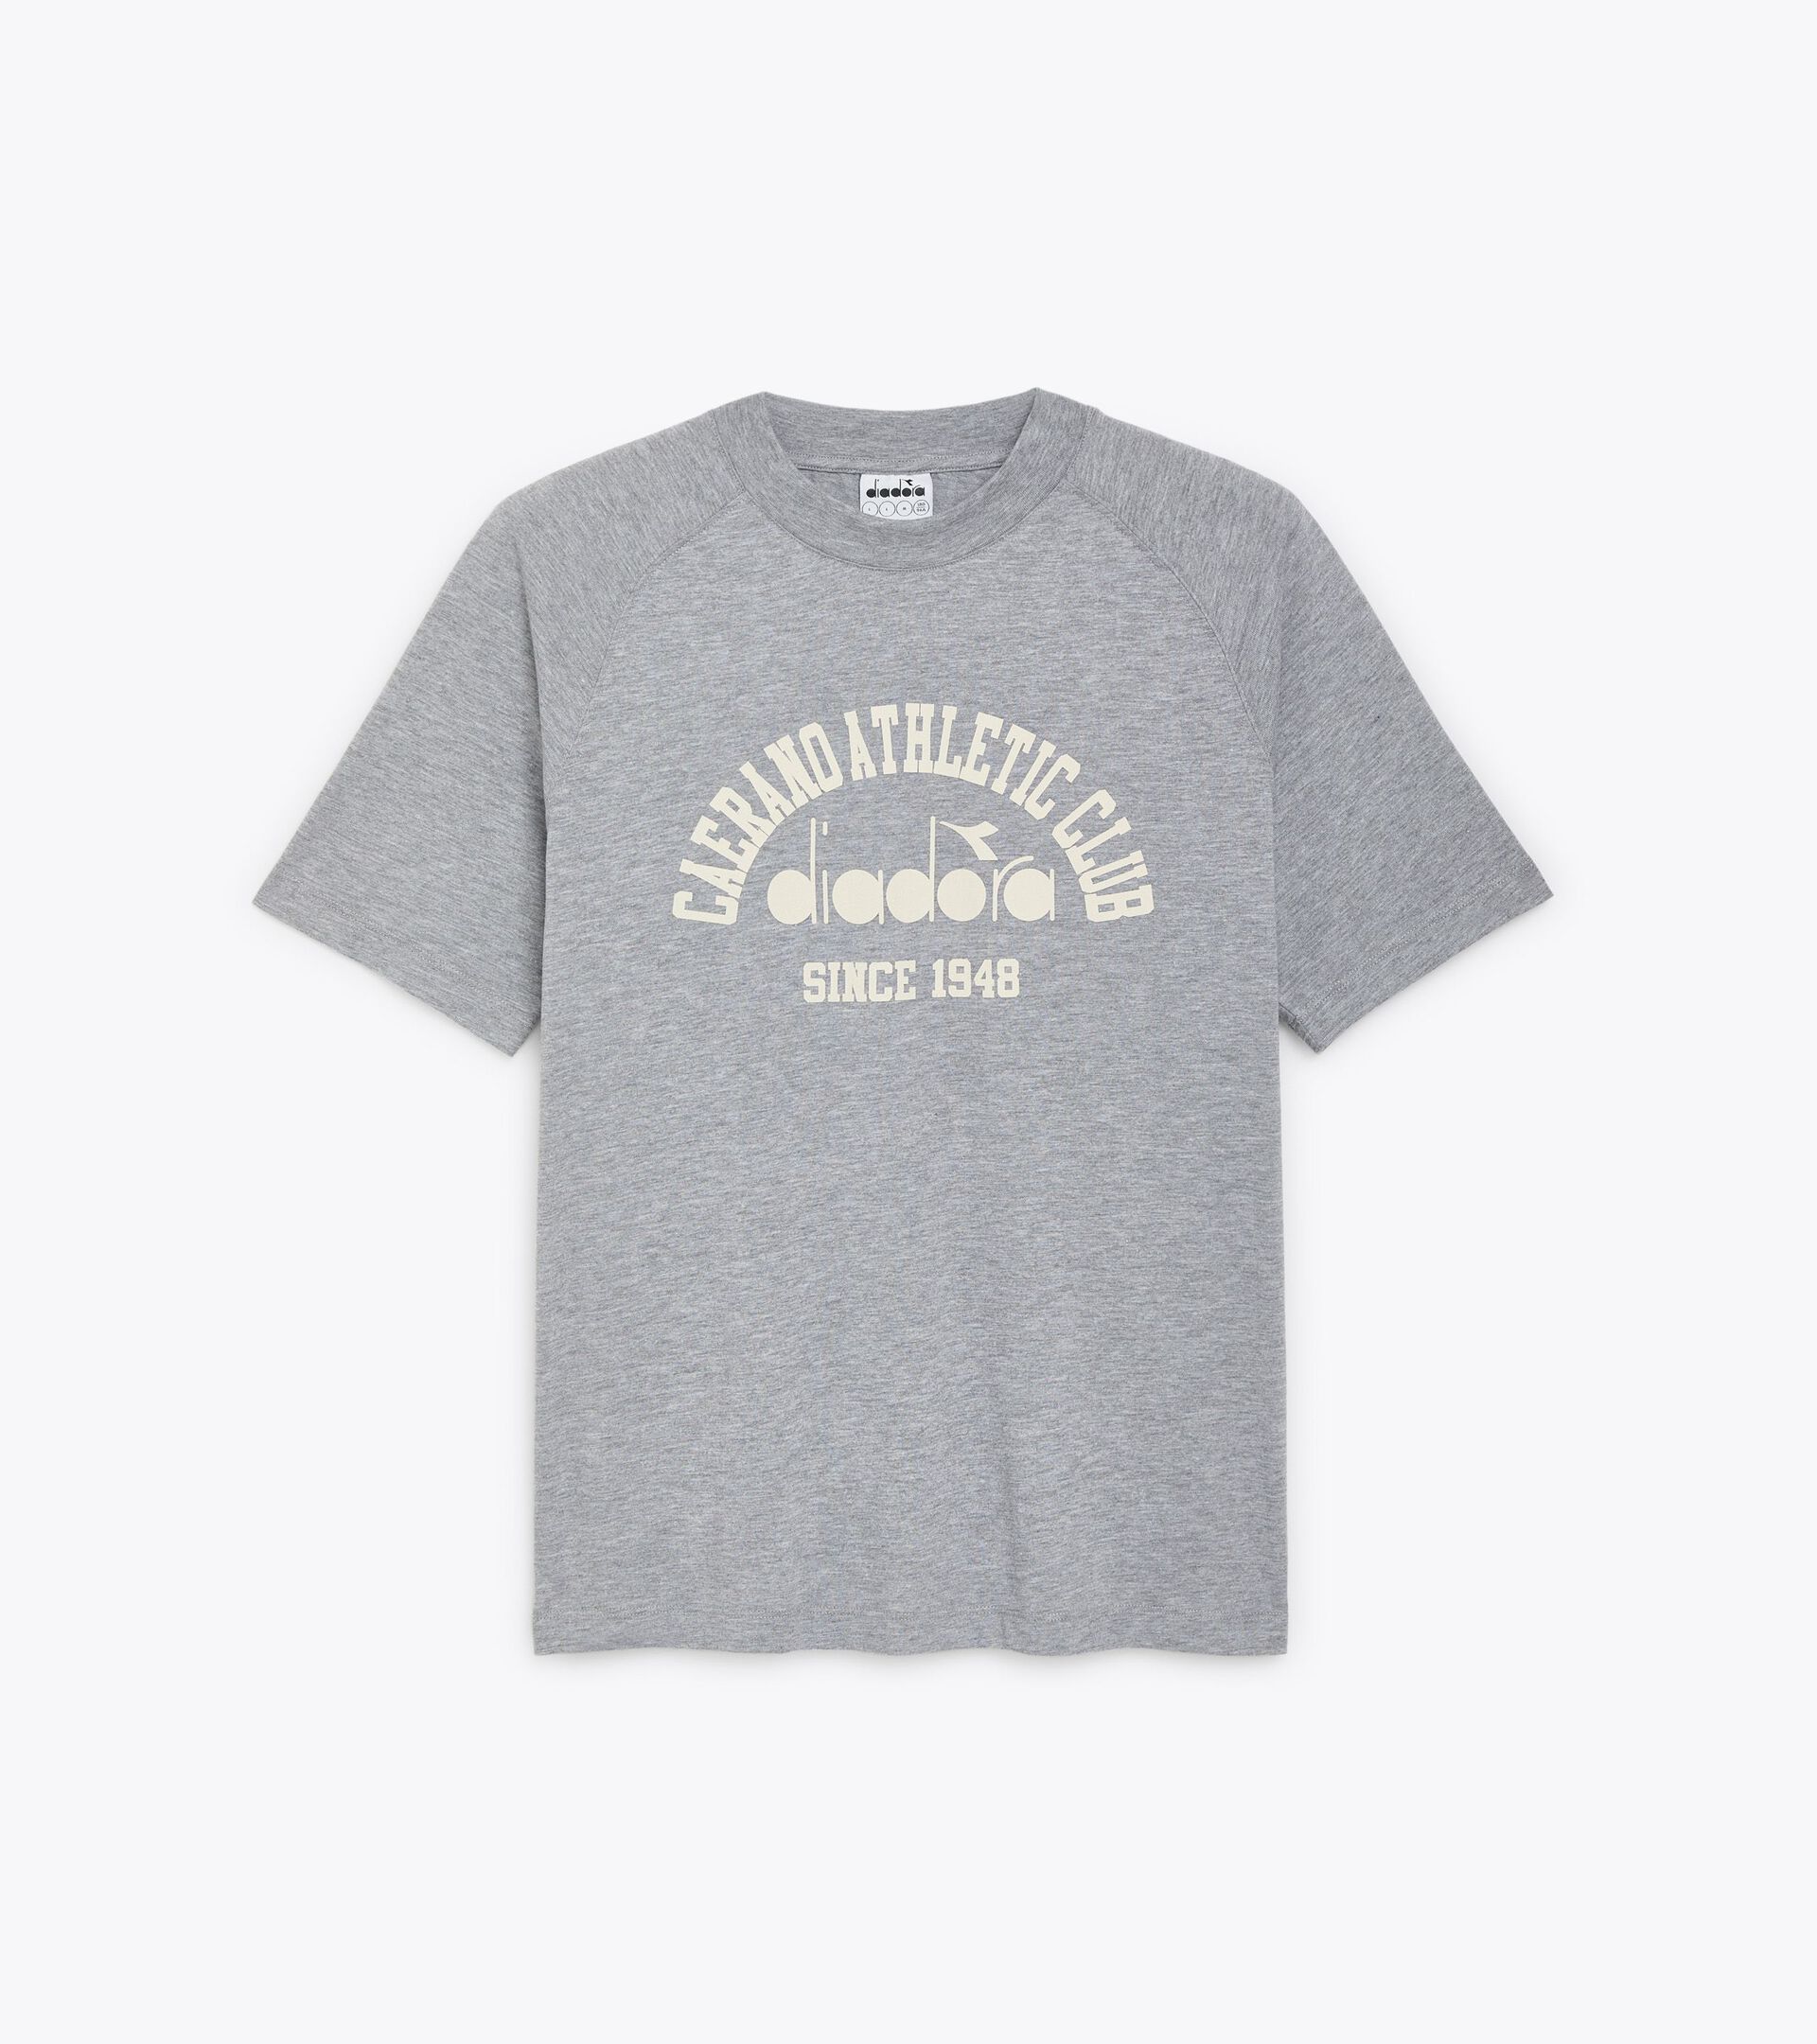 T-SHIRT SS 1948 ATHL. CLUB T-shirt - Gender Neutral - Diadora Online ...